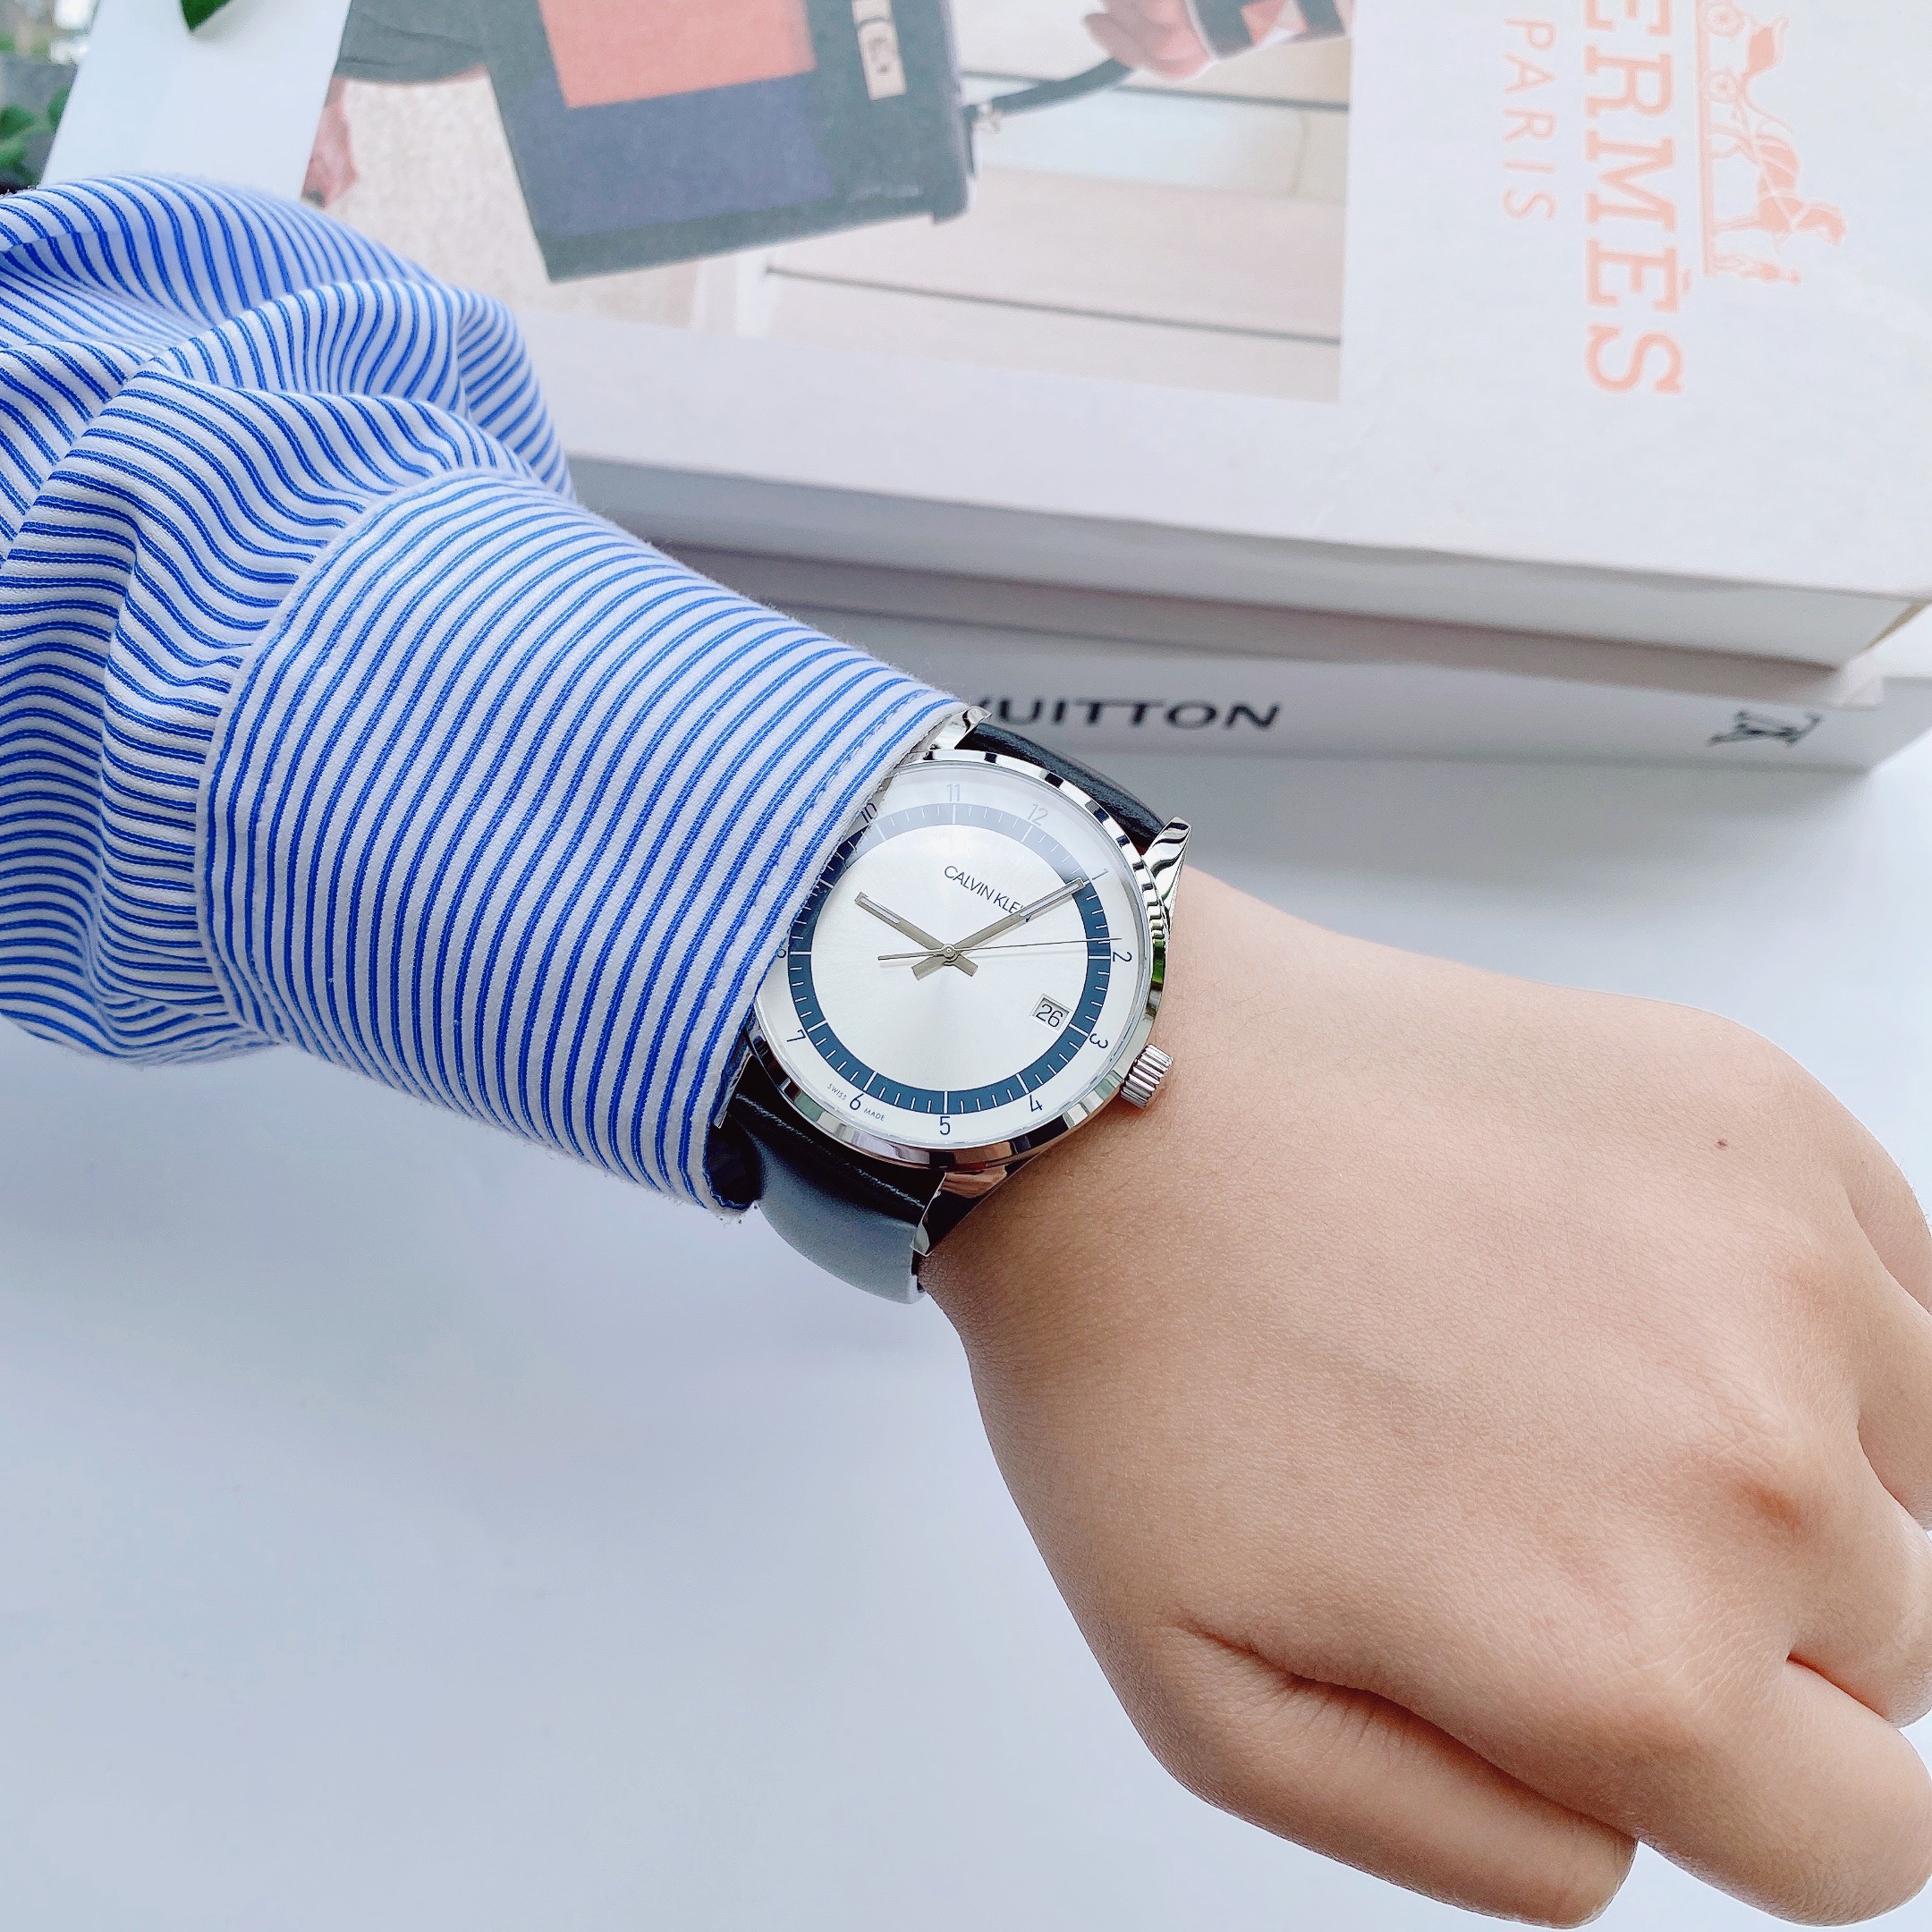 Đồng hồ Calvin Klein nam đẹp xuất sắc nổi bật với vòng tròn số màu xanh navy